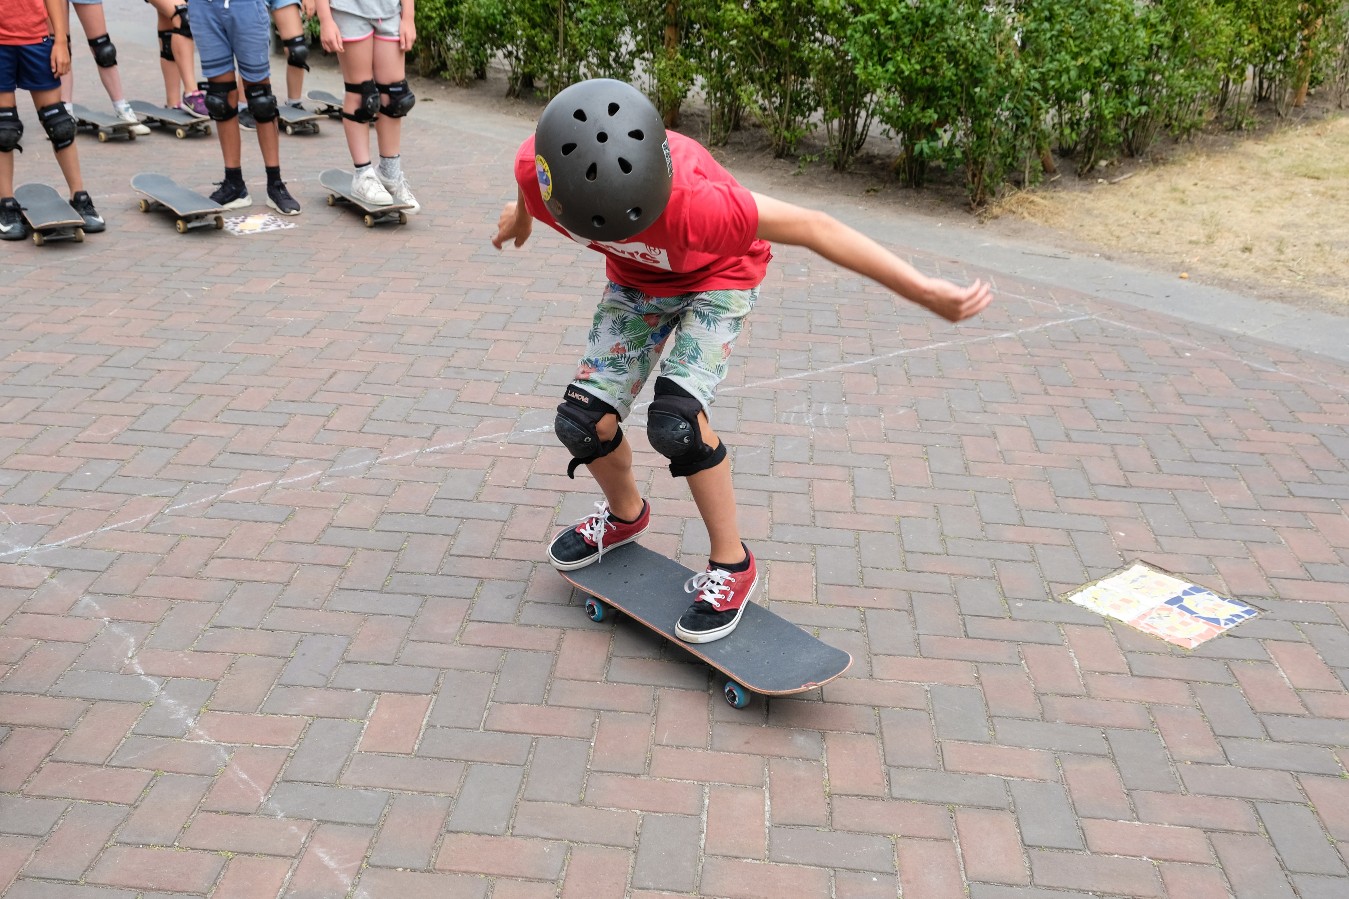 Deelnemer gaat klaarstaan voor een trick op een skateboard